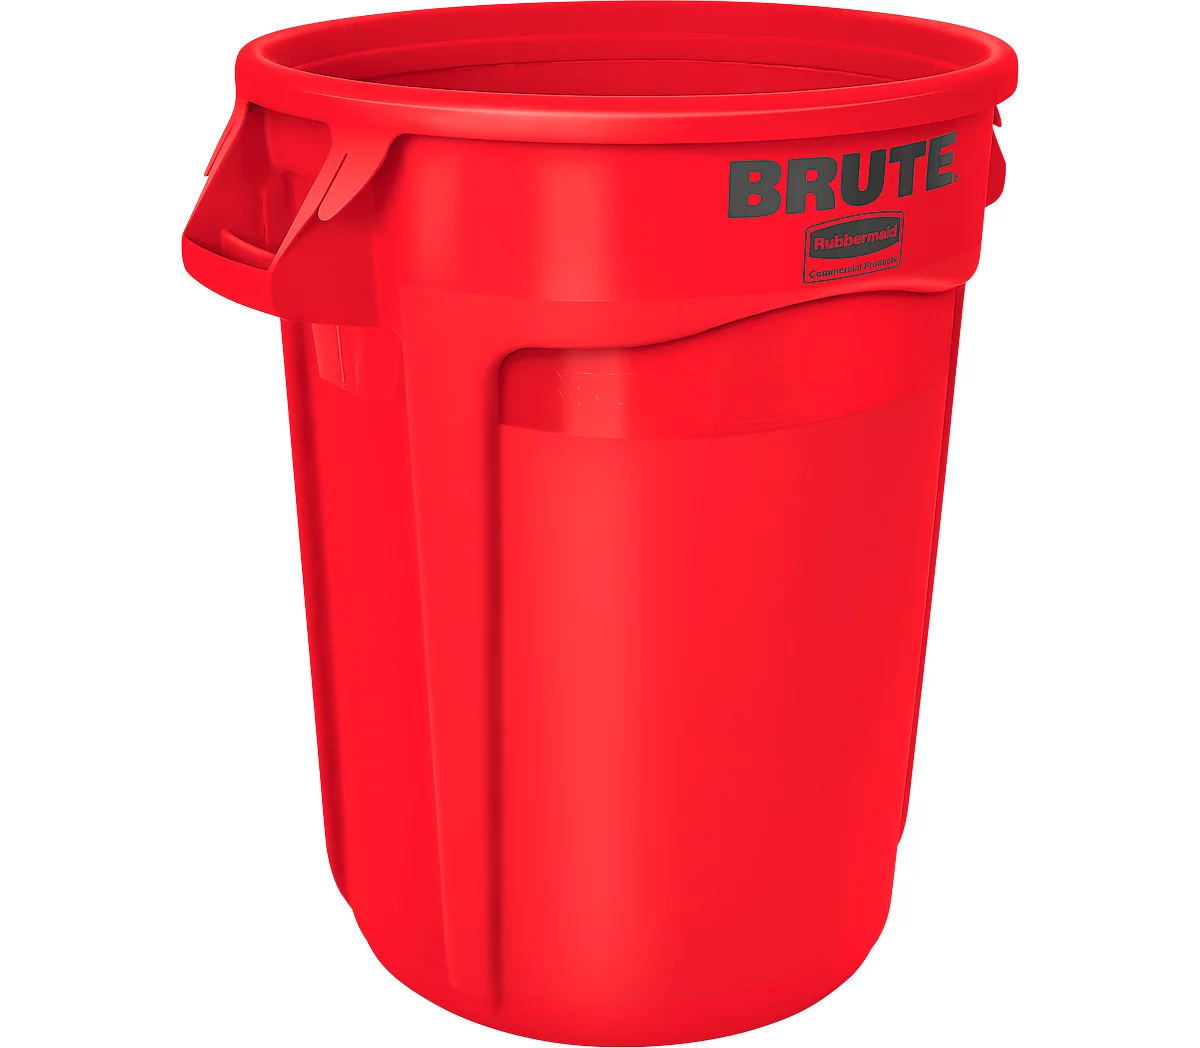 Kringloopmateriaalverzamelaar Brute, polyethyleen, rond, 121 l, rood